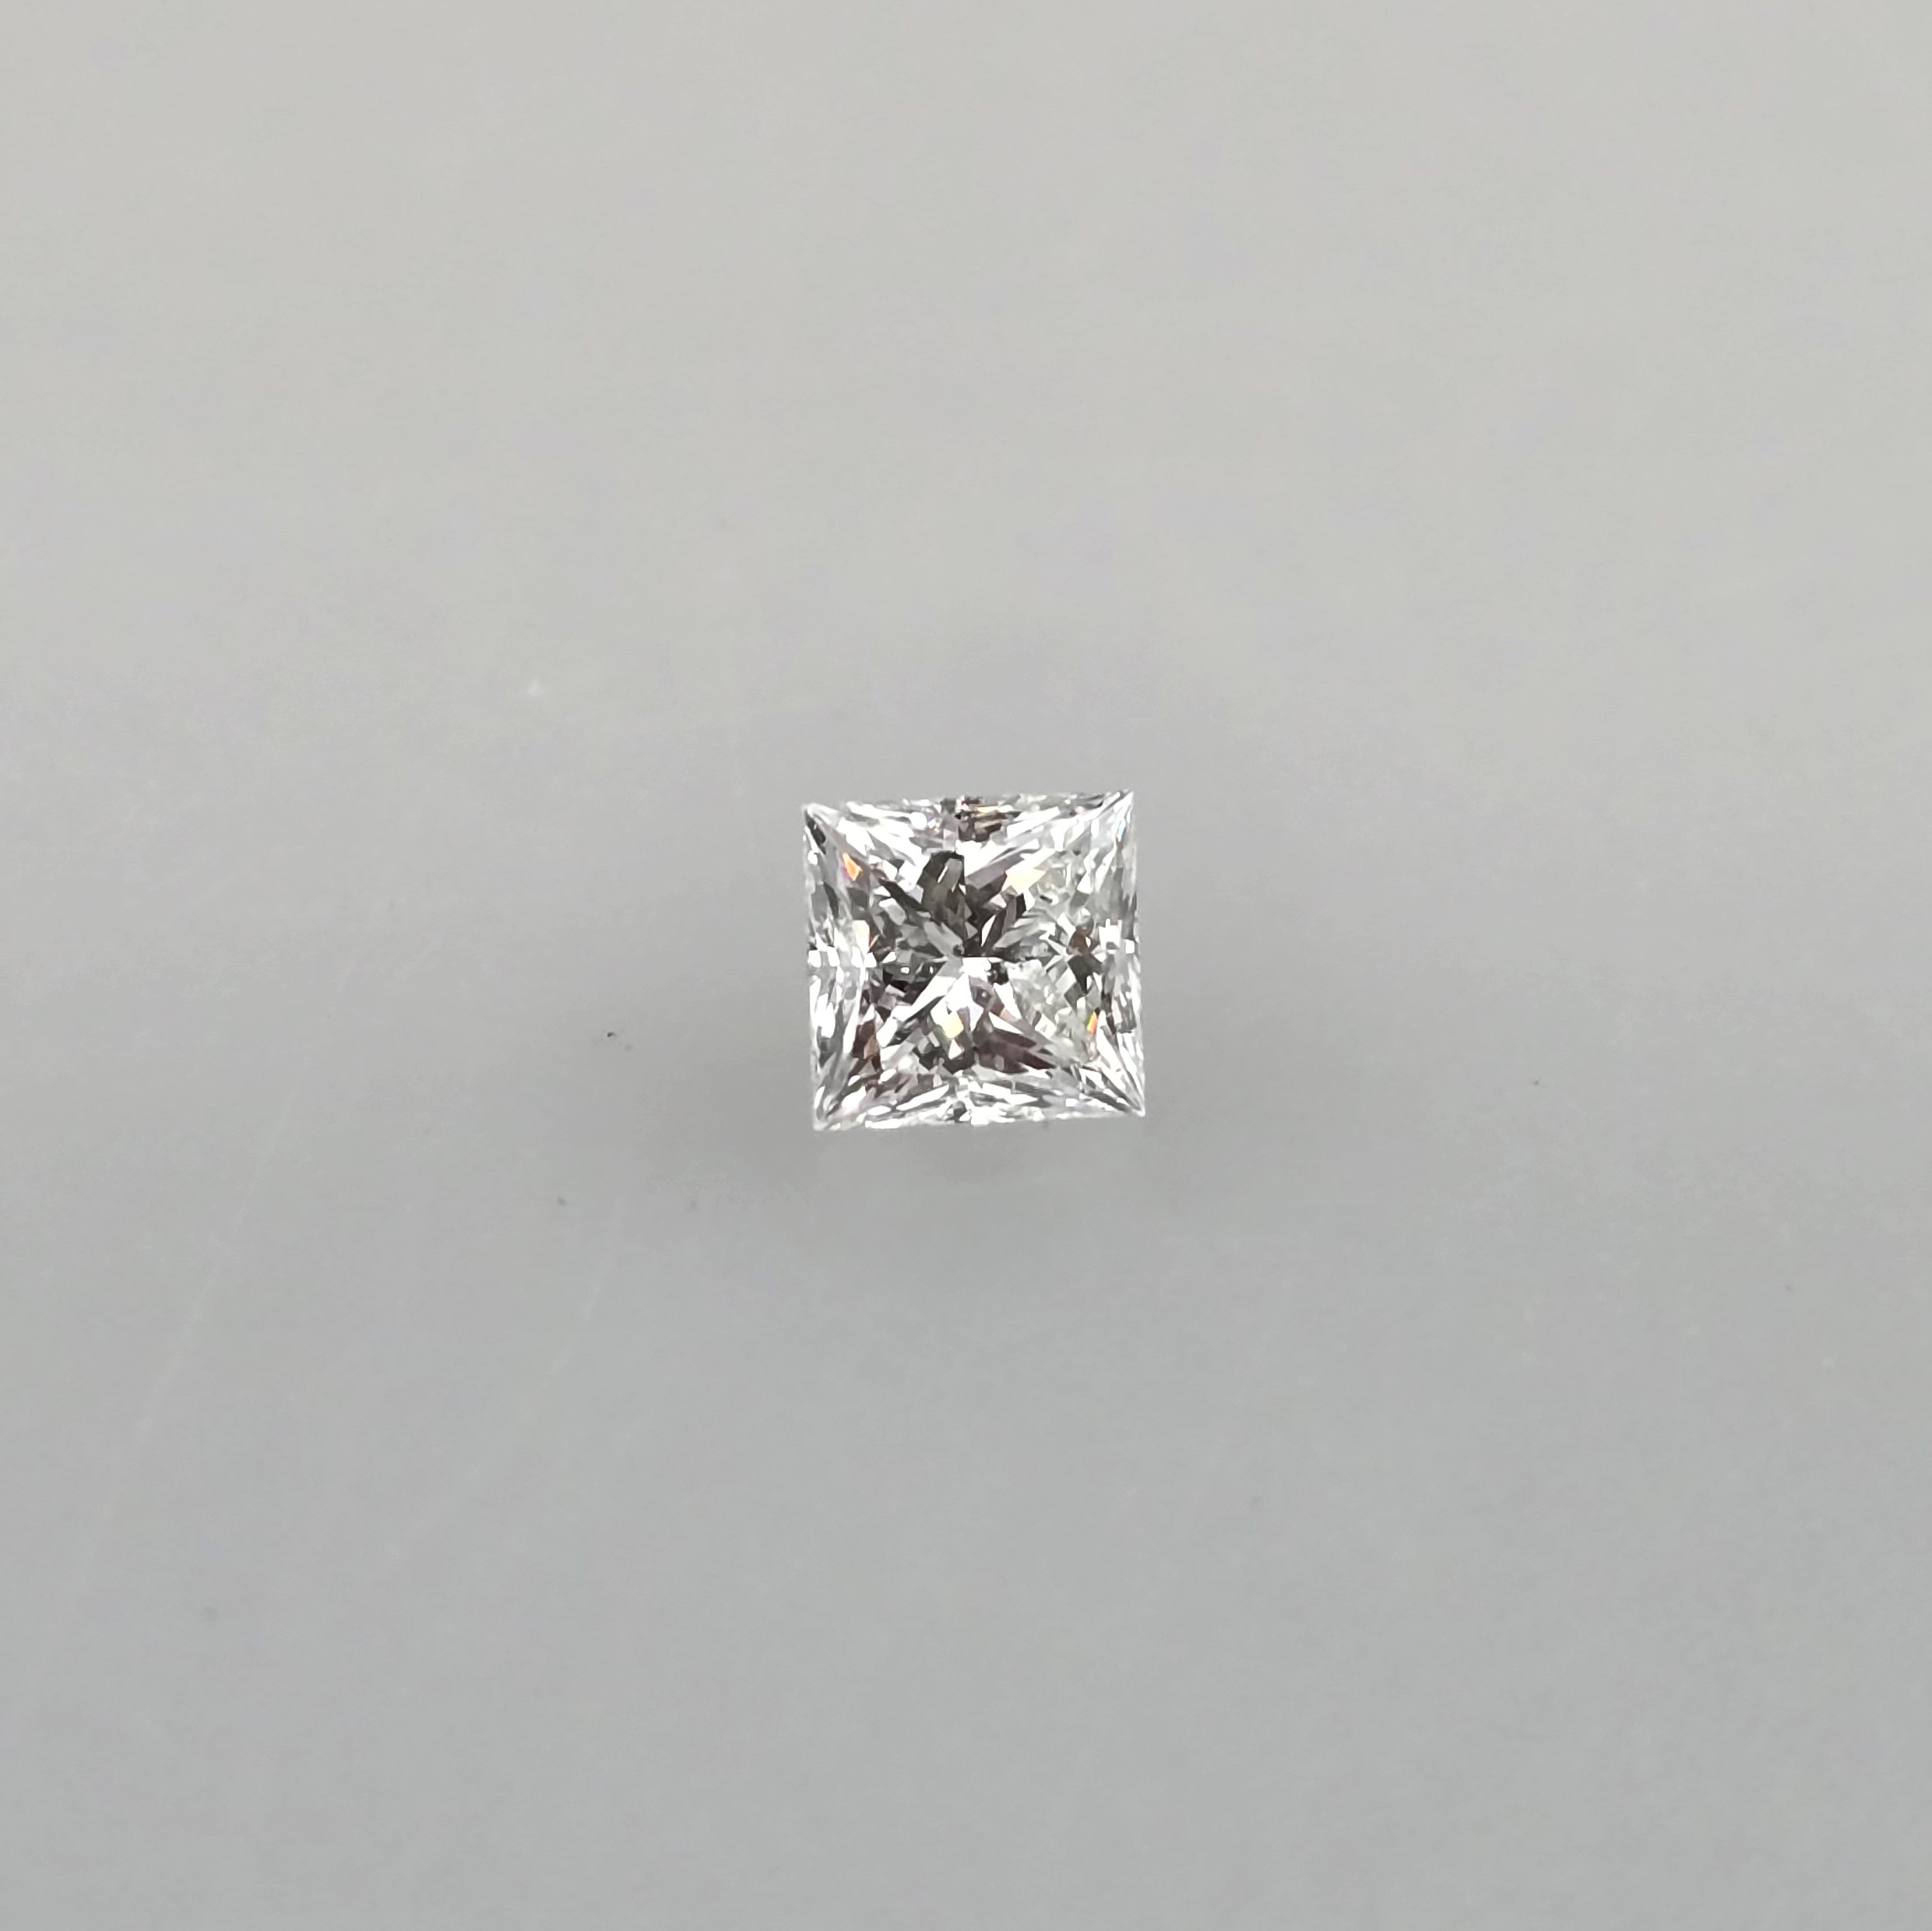 Loser natürlicher Diamant mit Lasersignatur - Gewicht 0,80 ct., Prinzessschliff, Farbe: G, Reinheit - Image 3 of 7